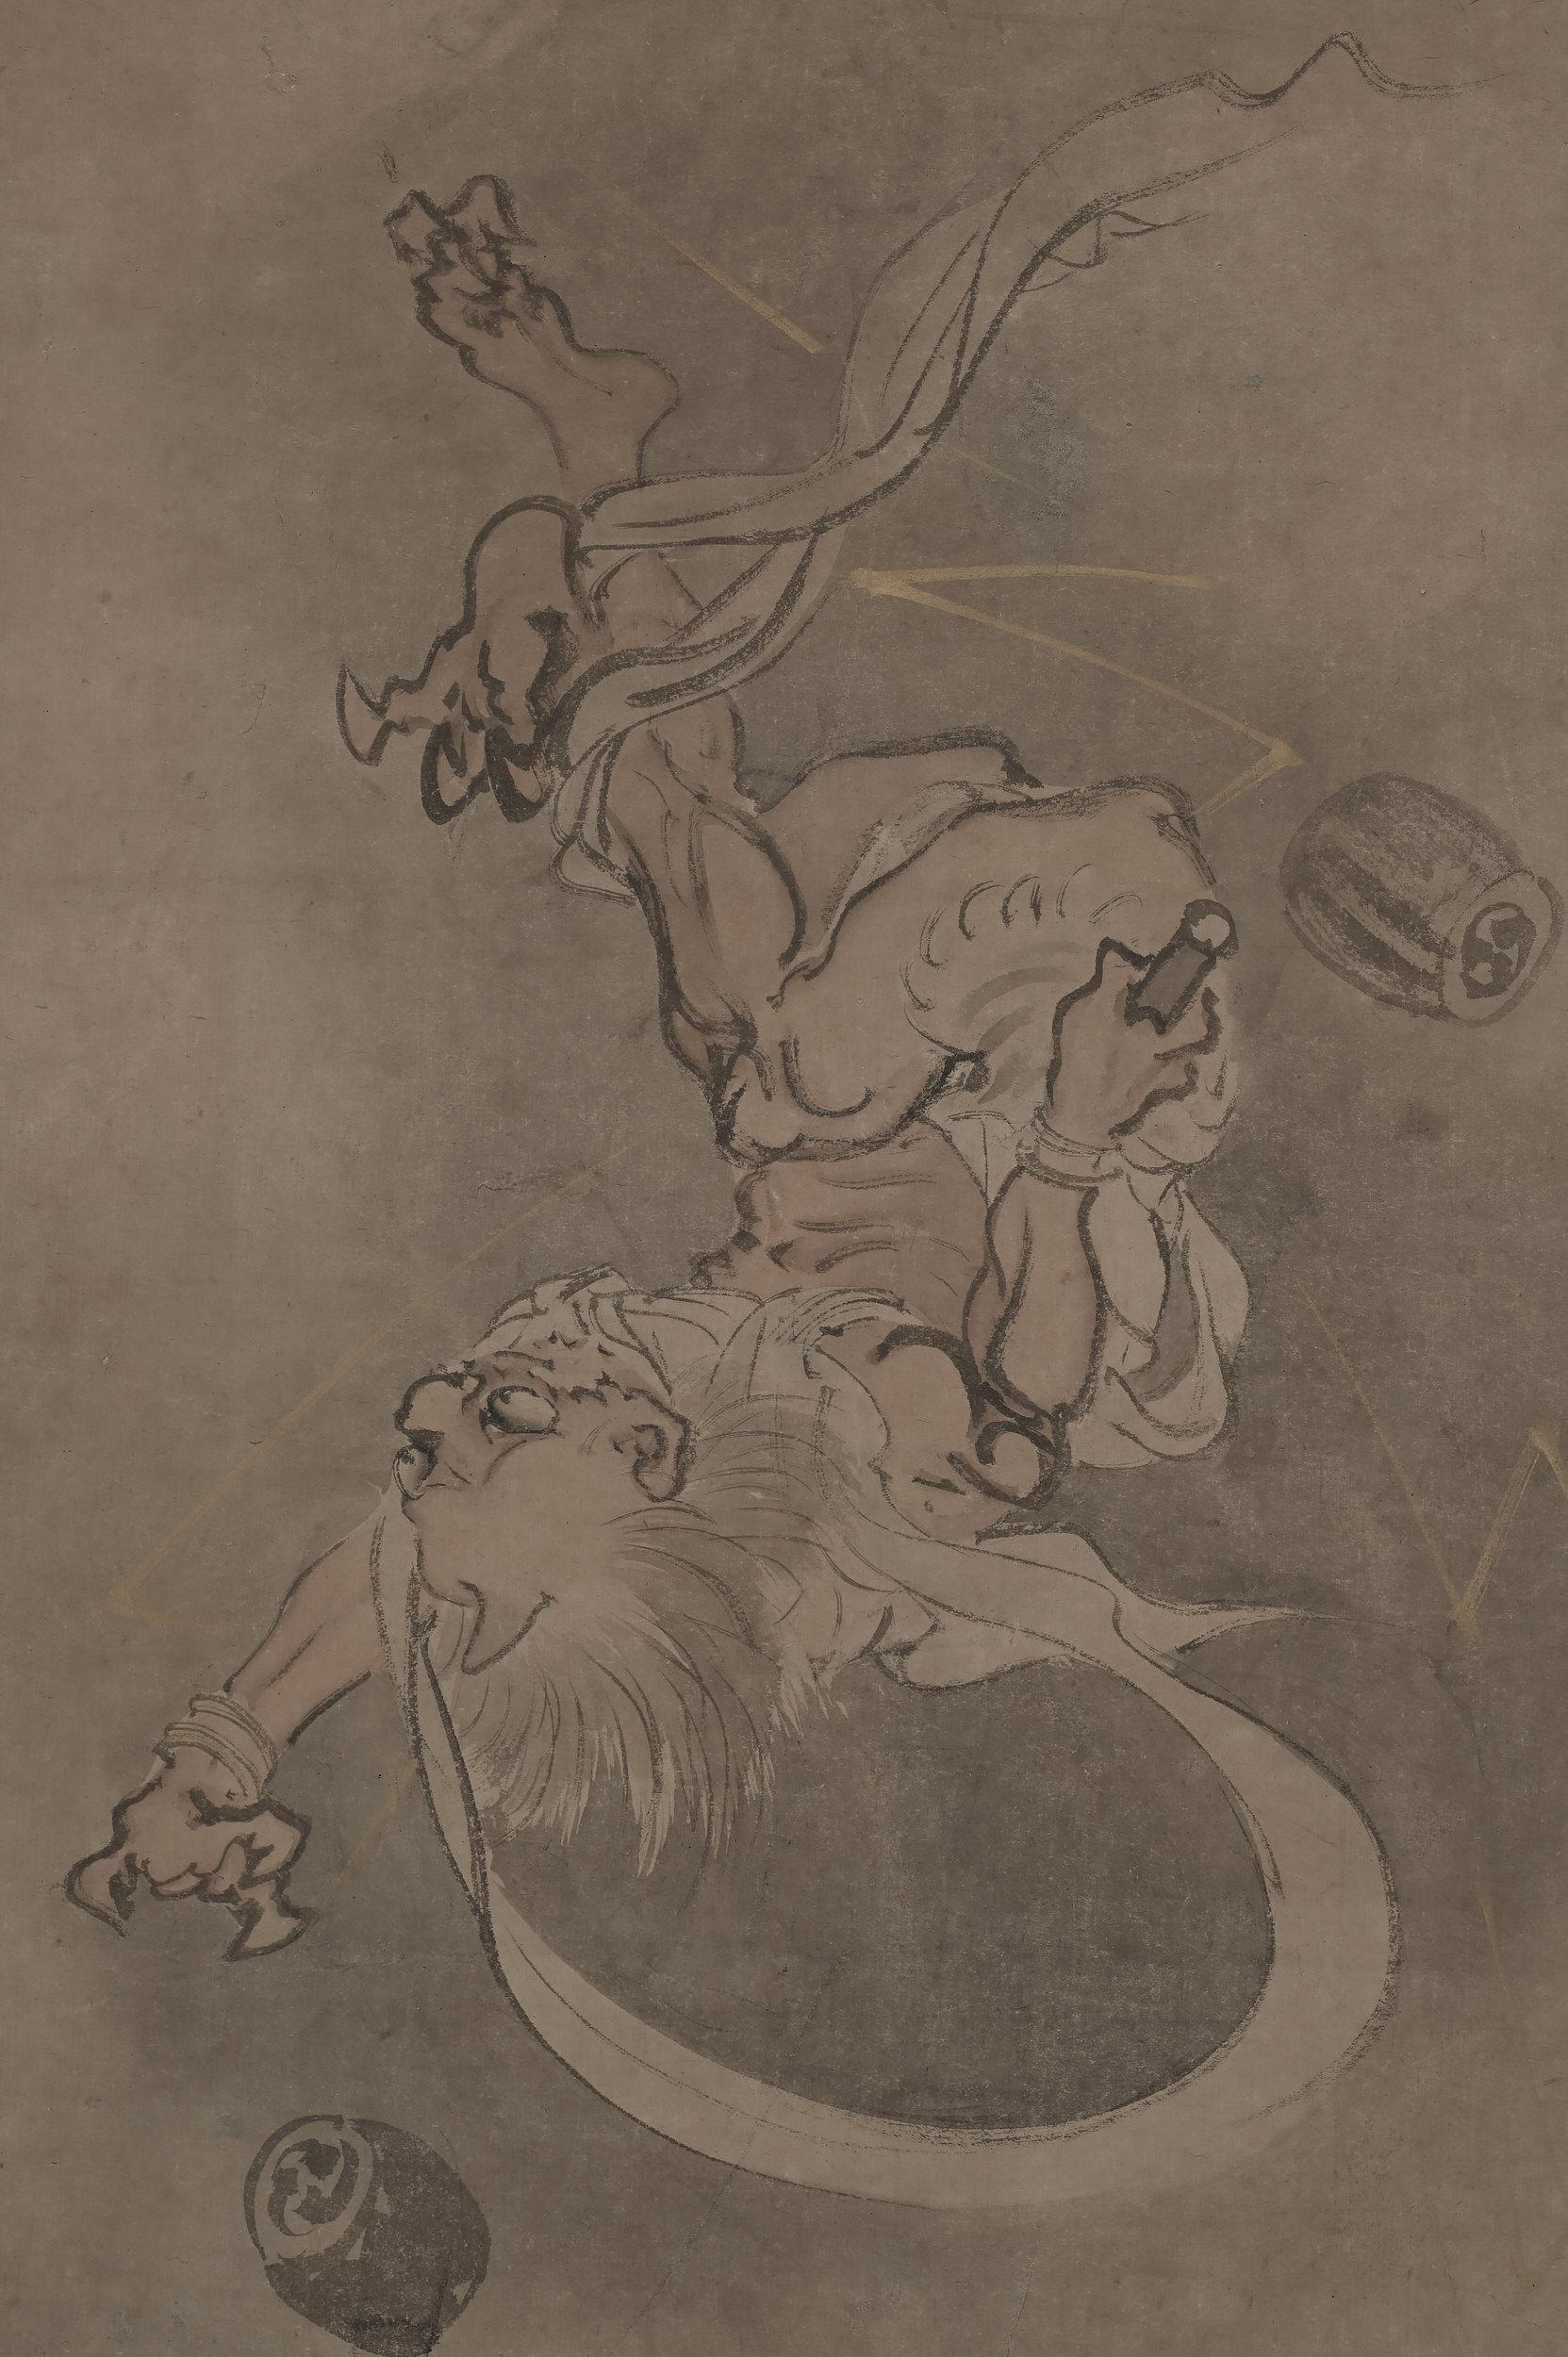 Raijin - Gott des Donners

Yamaguchi Soken (1759-1818)

Mittlere bis späte Edo-Zeit, um 1800.

Gerahmtes Gemälde. Tusche und helle Farbe auf Papier.

Dieses humorvolle Gemälde zeigt den Donnergott Raijin, der vom Himmel stürzt und vermutlich